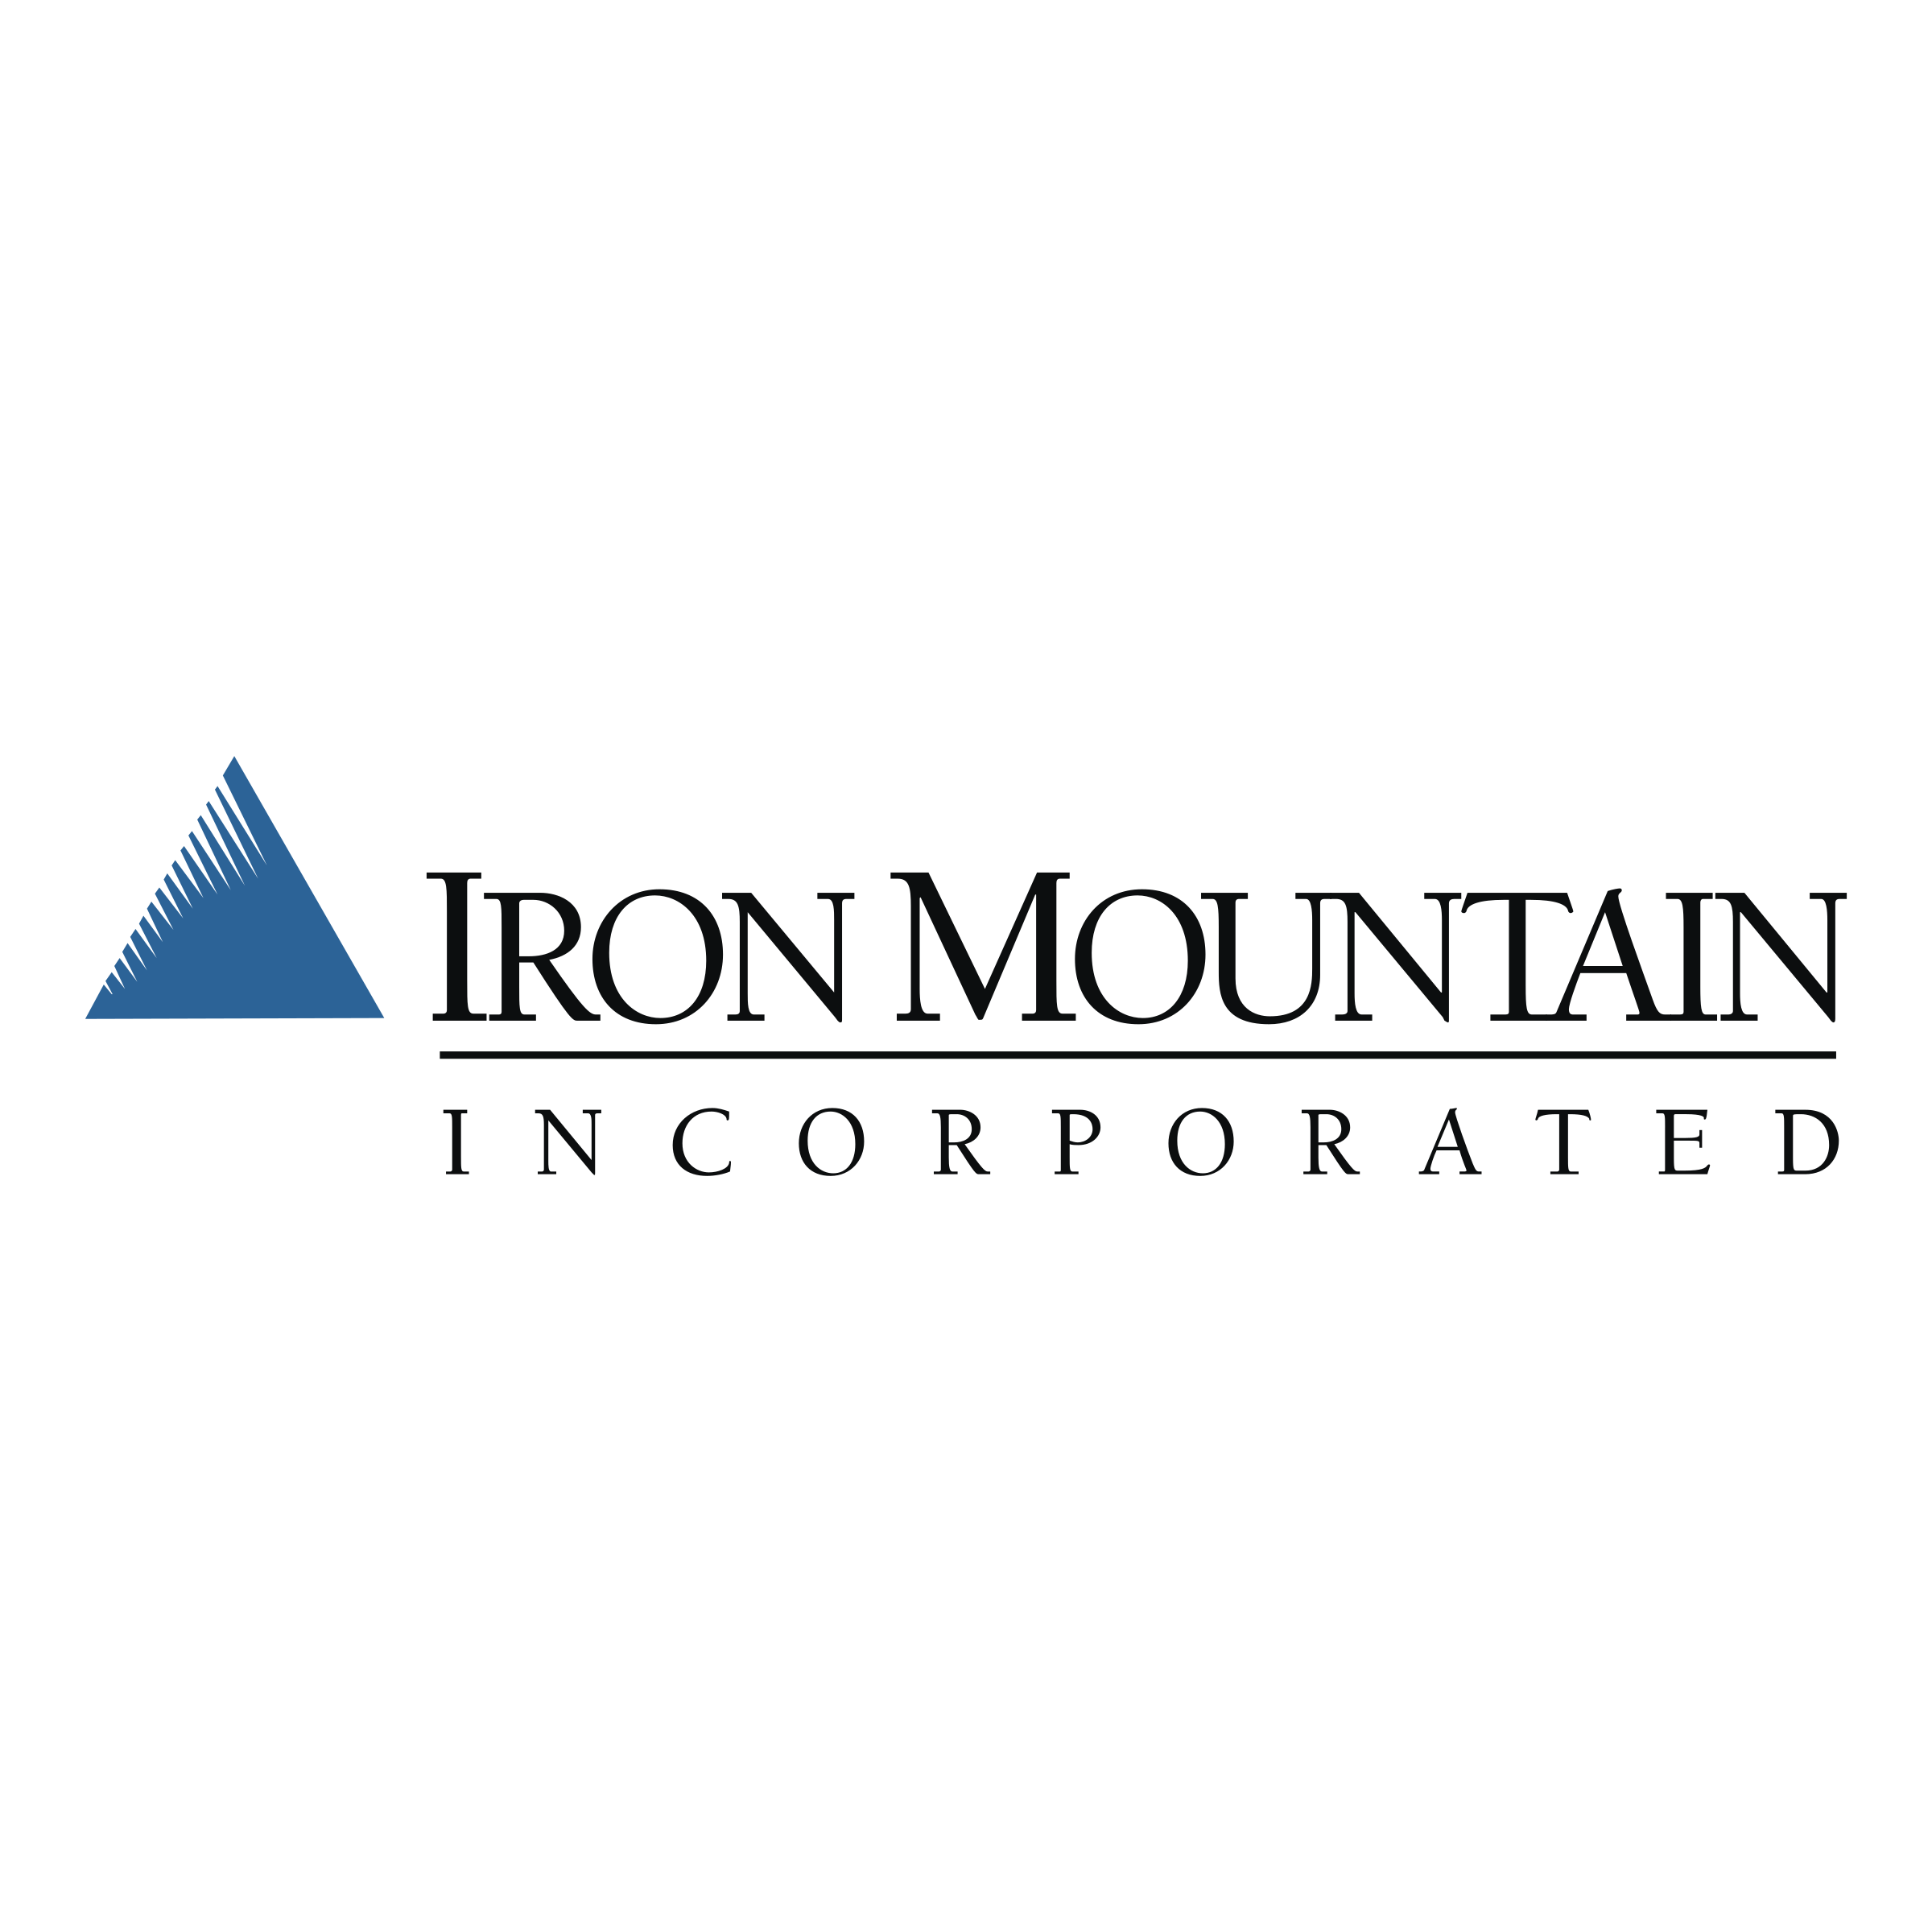 iron-mountain-logo-png-transparent.png